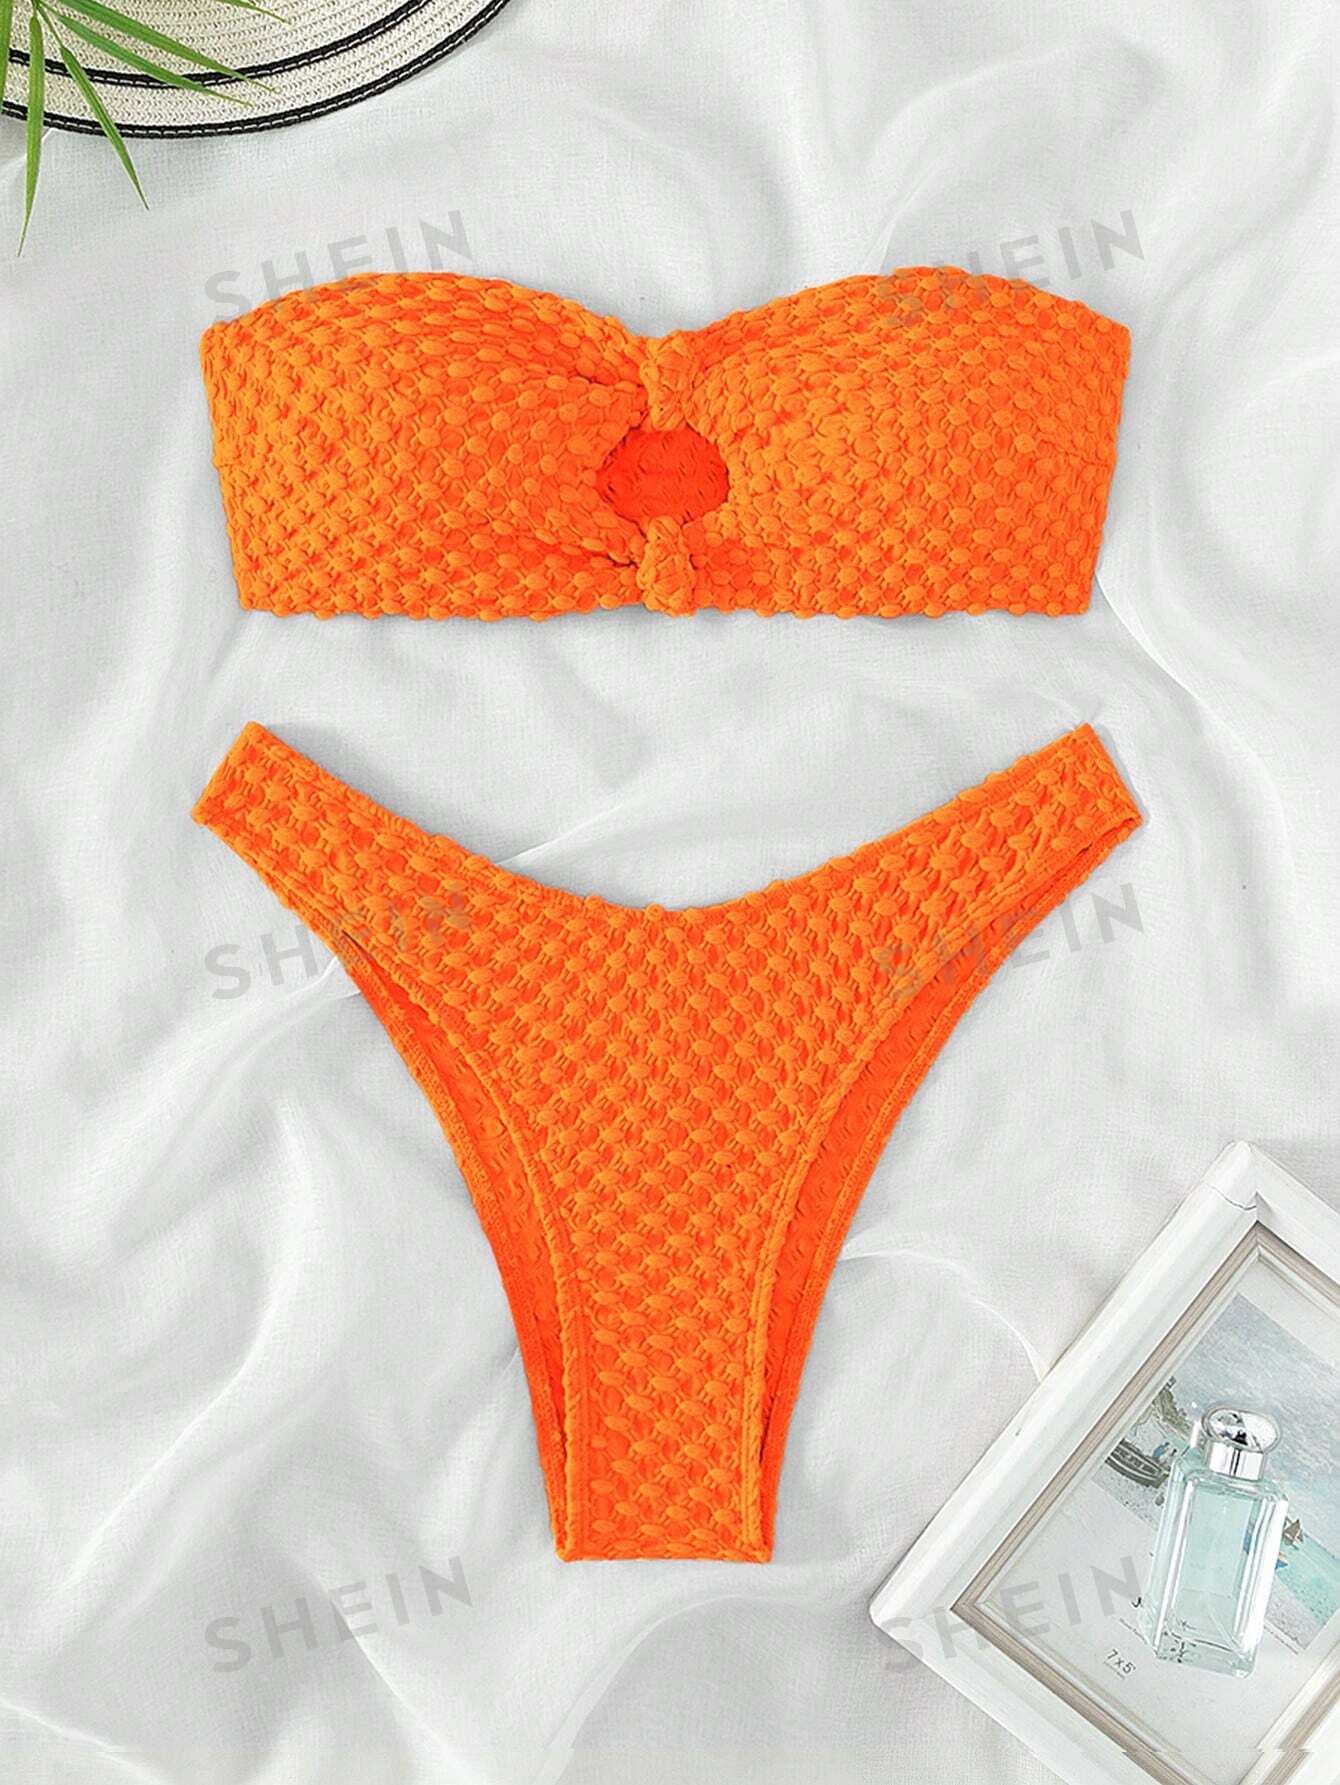 SHEIN Swim Basics Женский текстурированный купальник-бандо из двух частей с V-образным вырезом на талии, апельсин